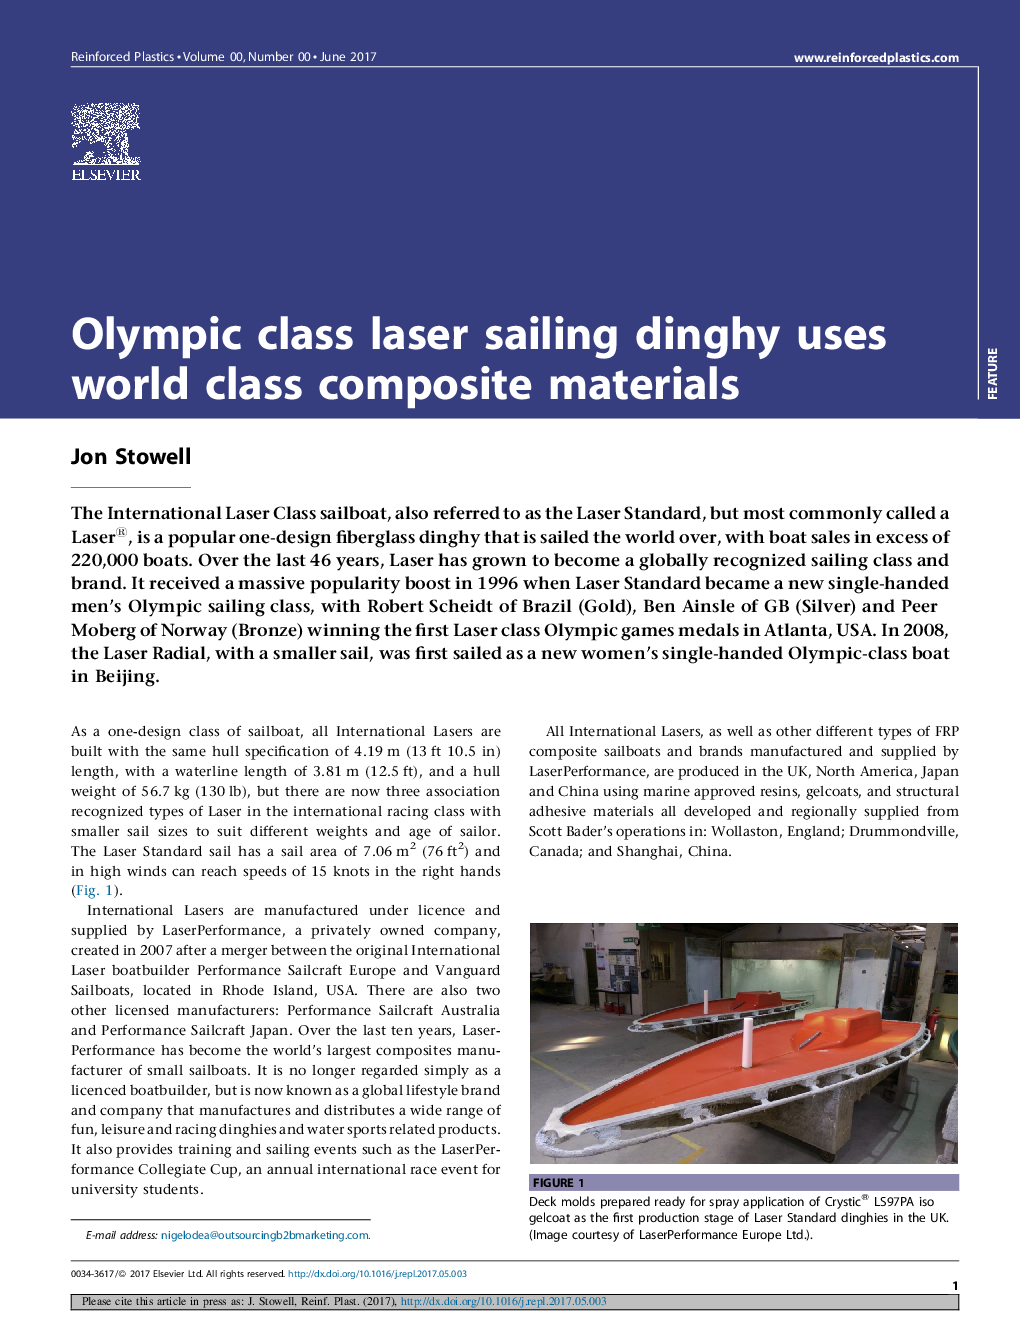 قایقرانی لیزری کلاس های المپیک از مواد کامپوزیتی کلاس جهانی استفاده می کند 